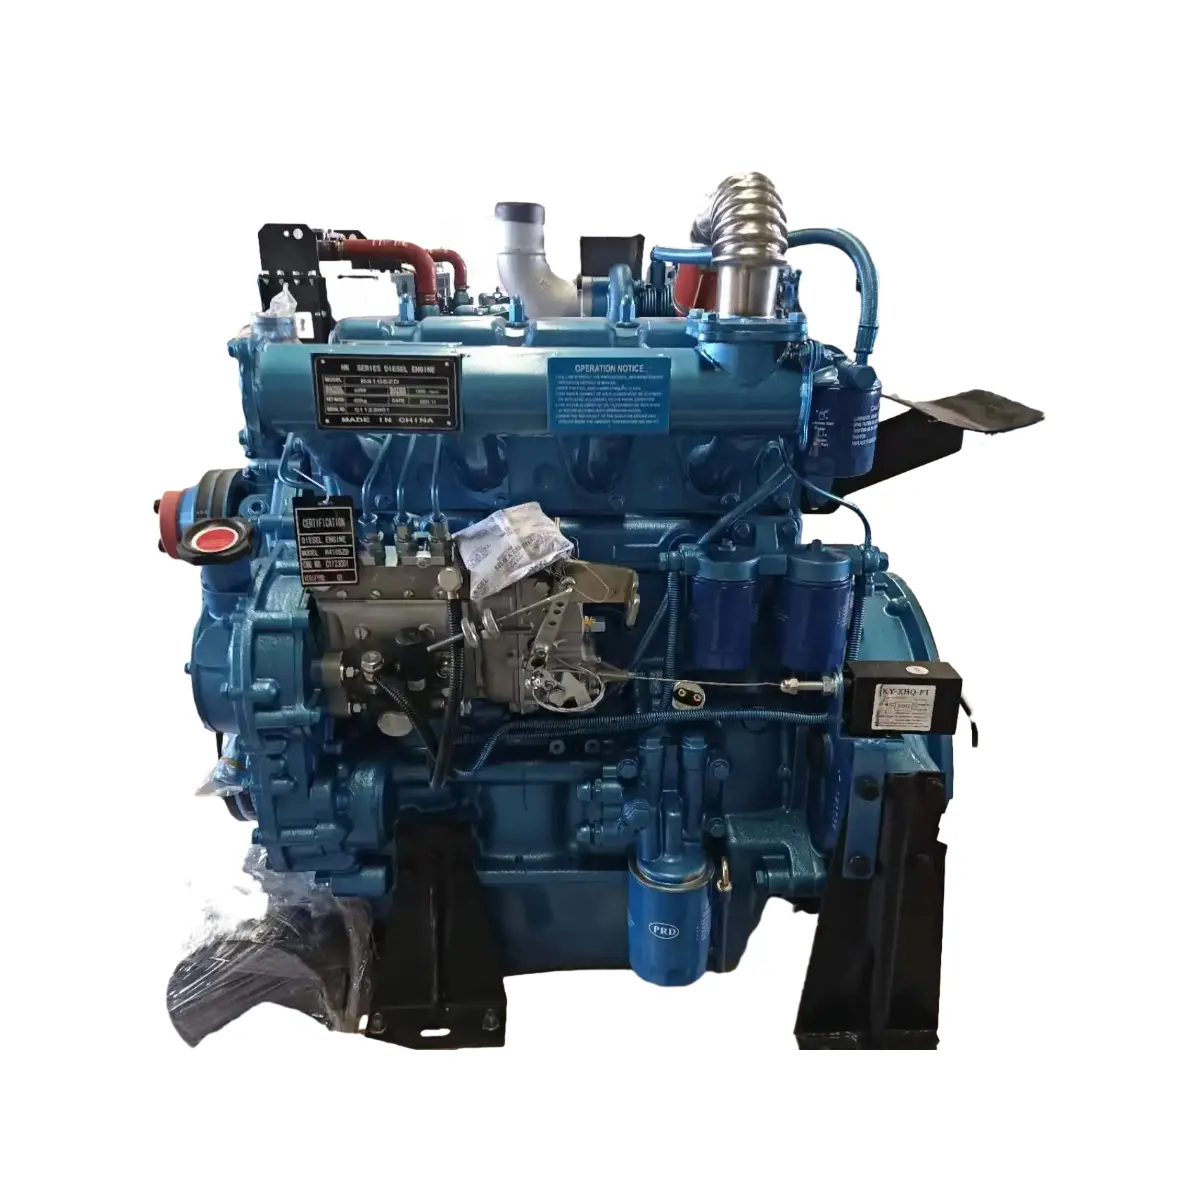 चीन में निर्मित R4105zd डीजल इंजन के लिए डीजल जनरेटर और वाटर पंप 1500 आरपीएम 4-सिलेंडर इंजन